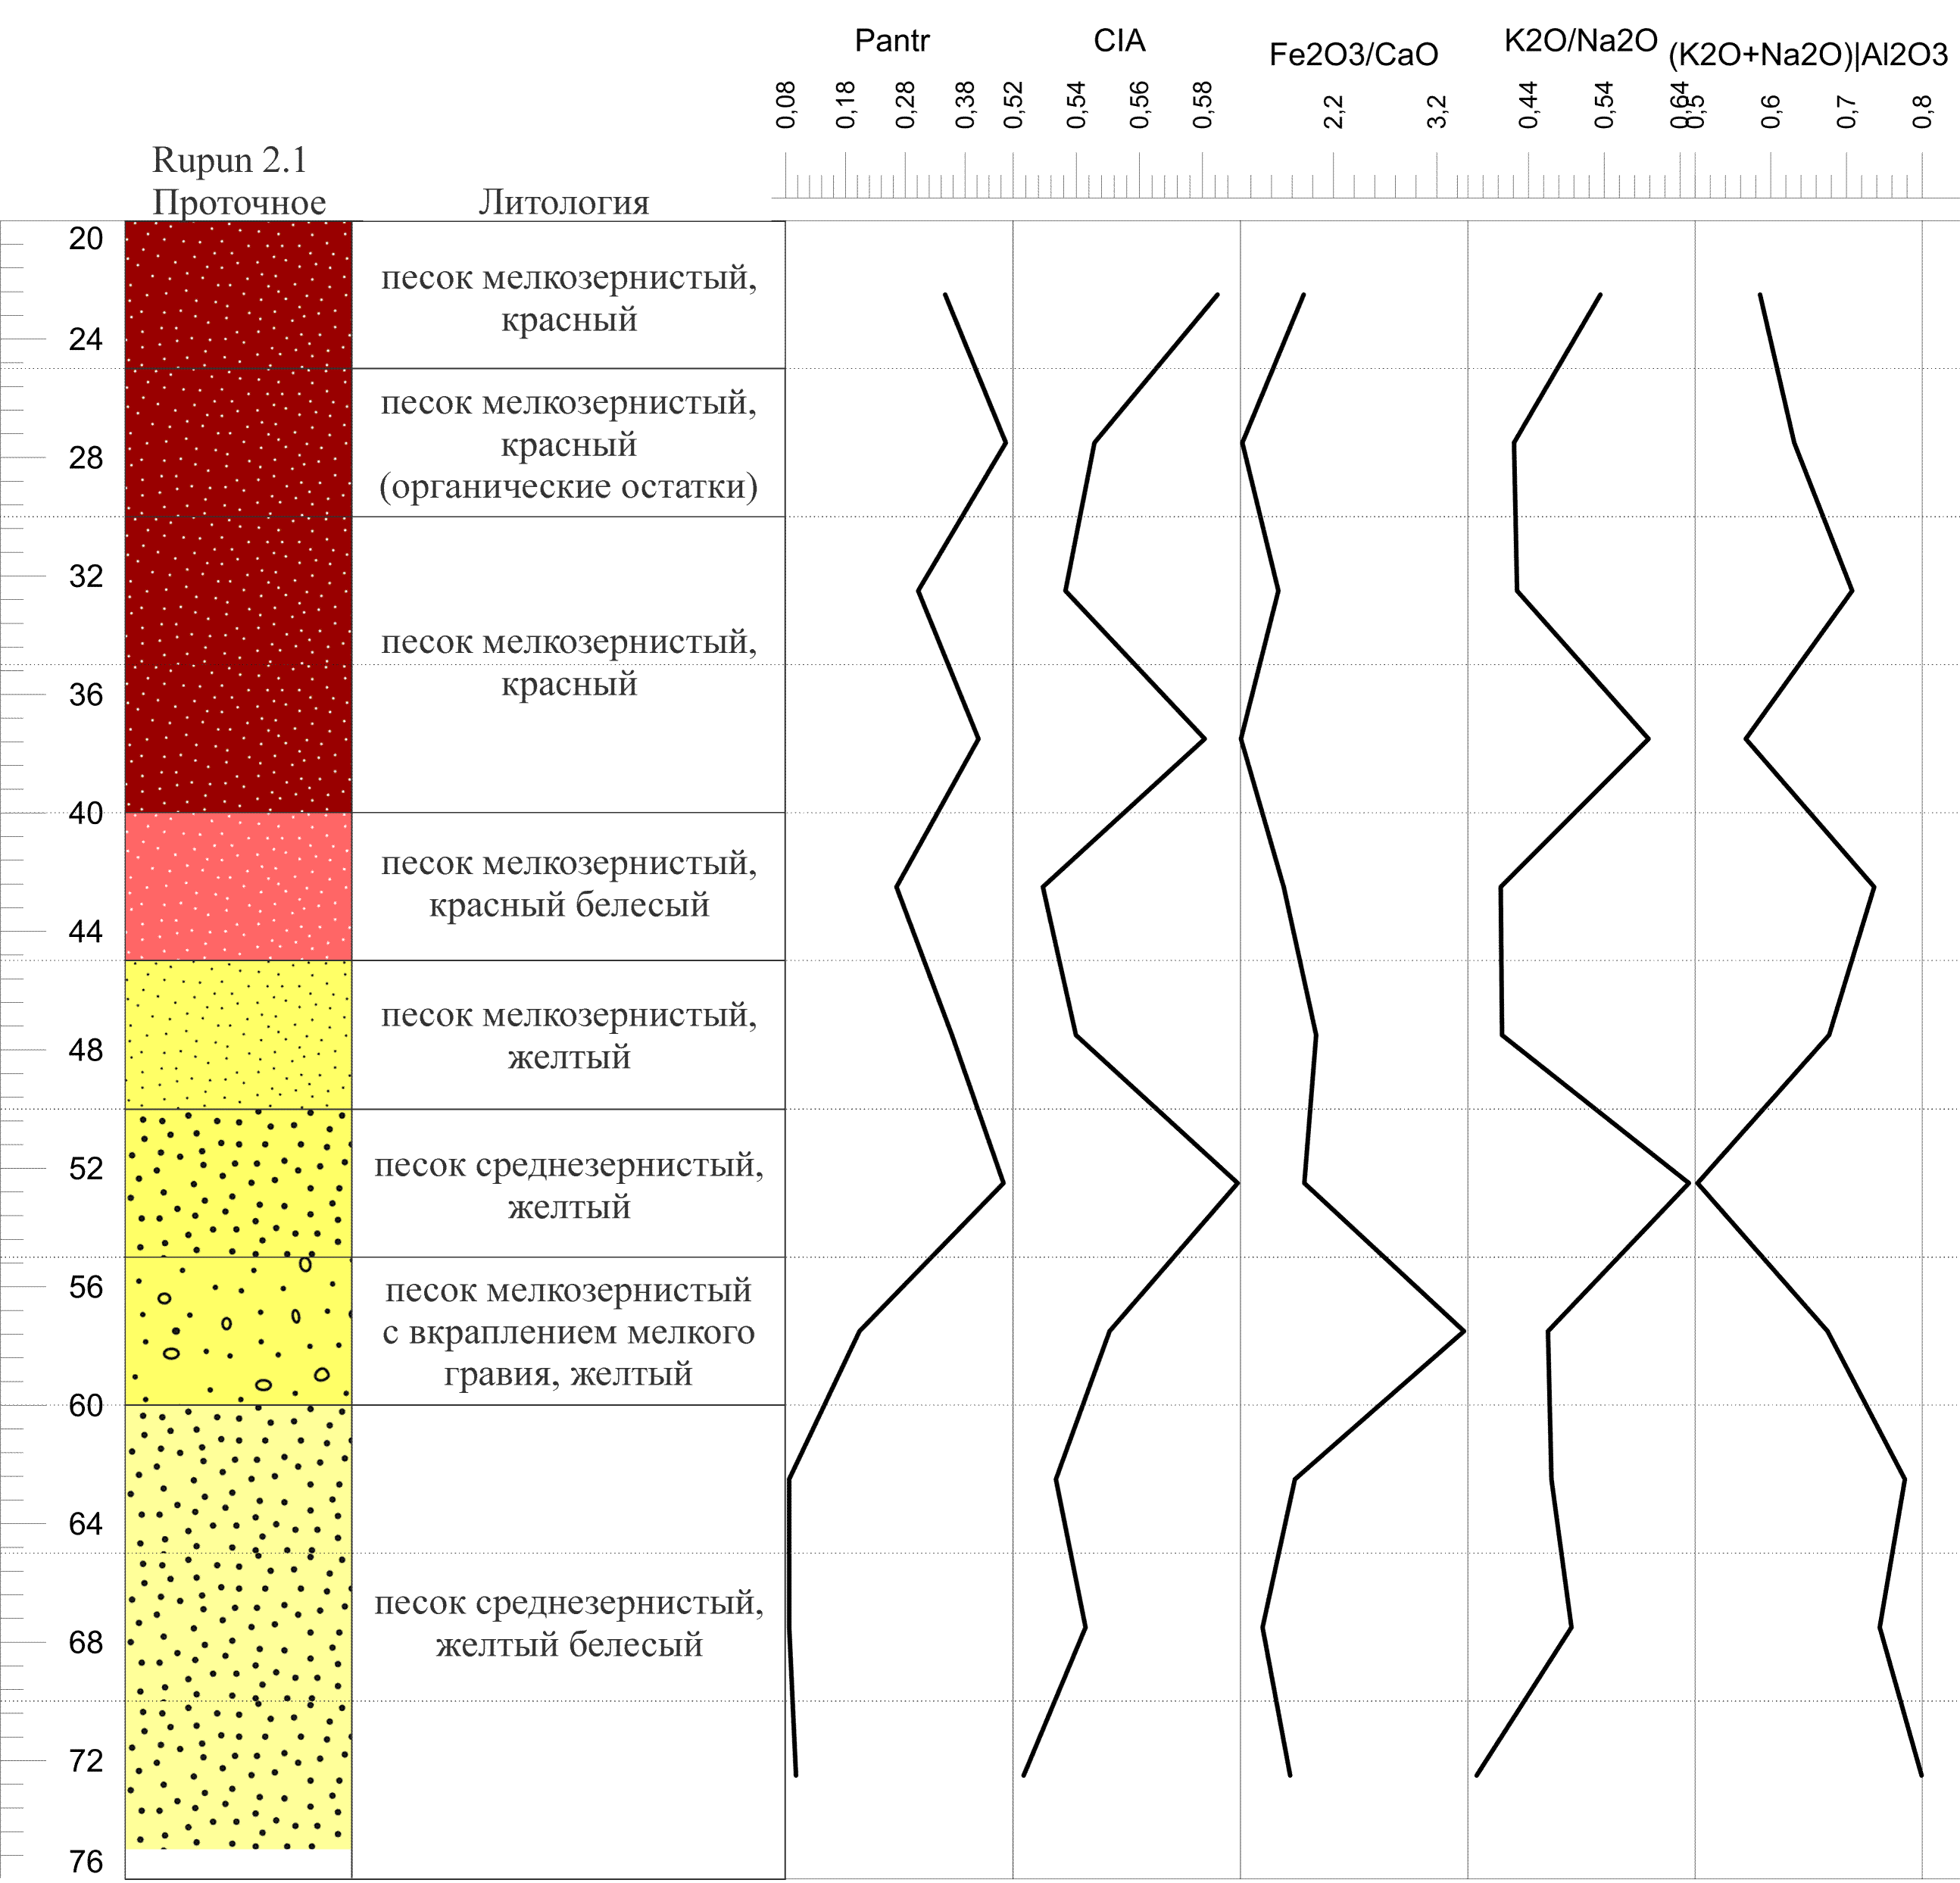 Графики изменения показателей геохимических индикаторов ландшафтно-климатических условий и антропогенной активности для археологического памятника «Проточное (Rupun 2.1)»